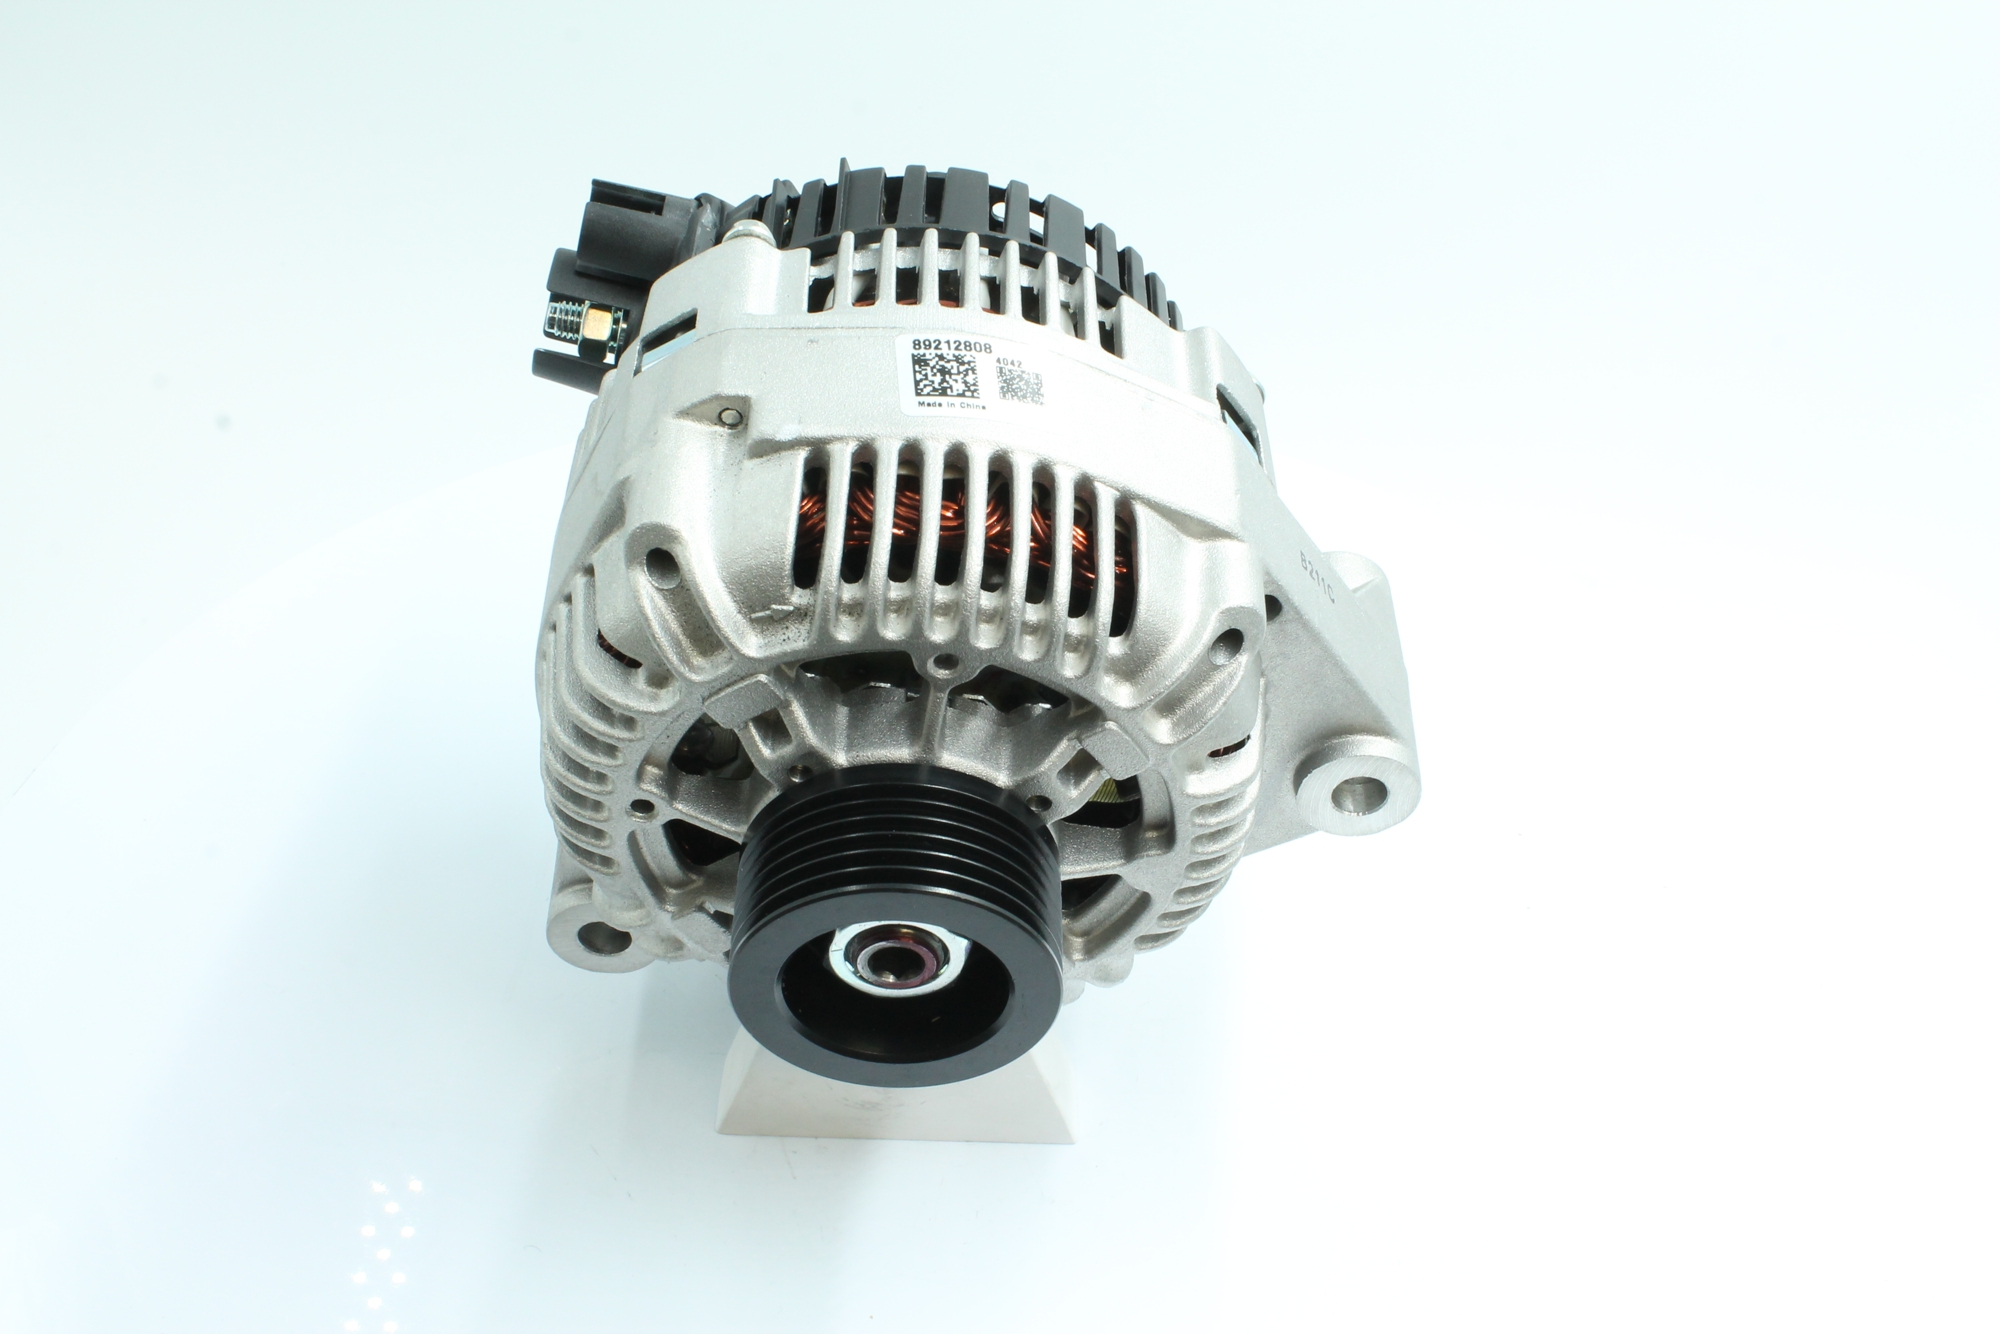 PowerMax 14V, 80A, Ø 56 mm Generator 89212808 buy